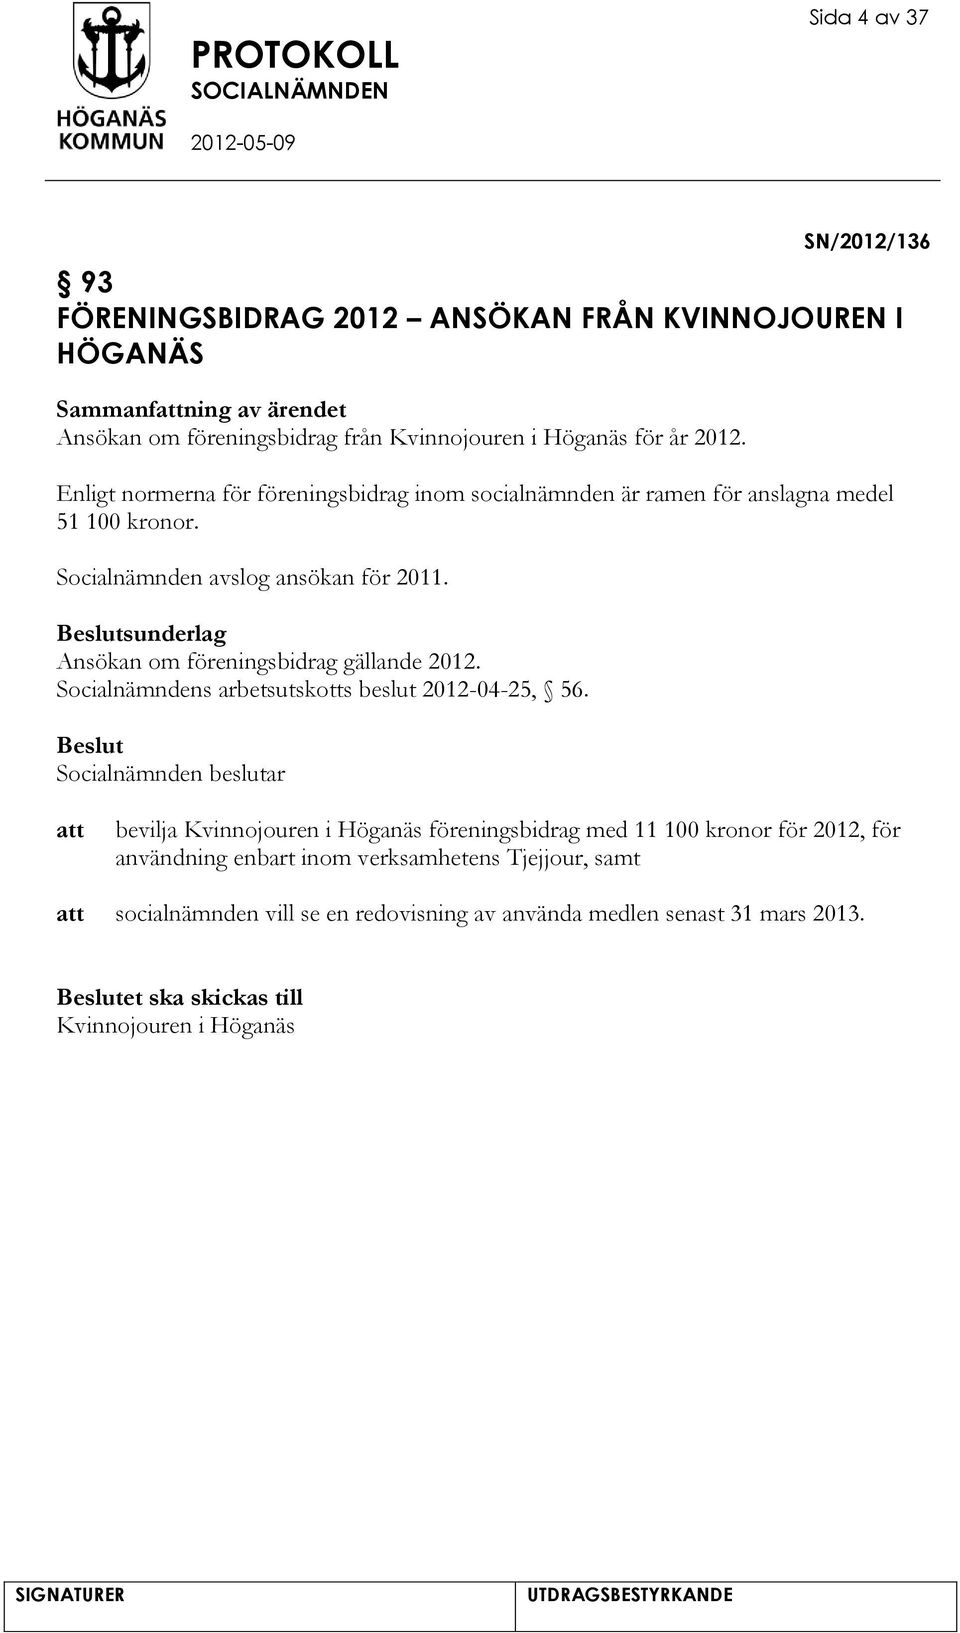 sunderlag Ansökan om föreningsbidrag gällande 2012. Socialnämndens arbetsutskotts beslut 2012-04-25, 56.